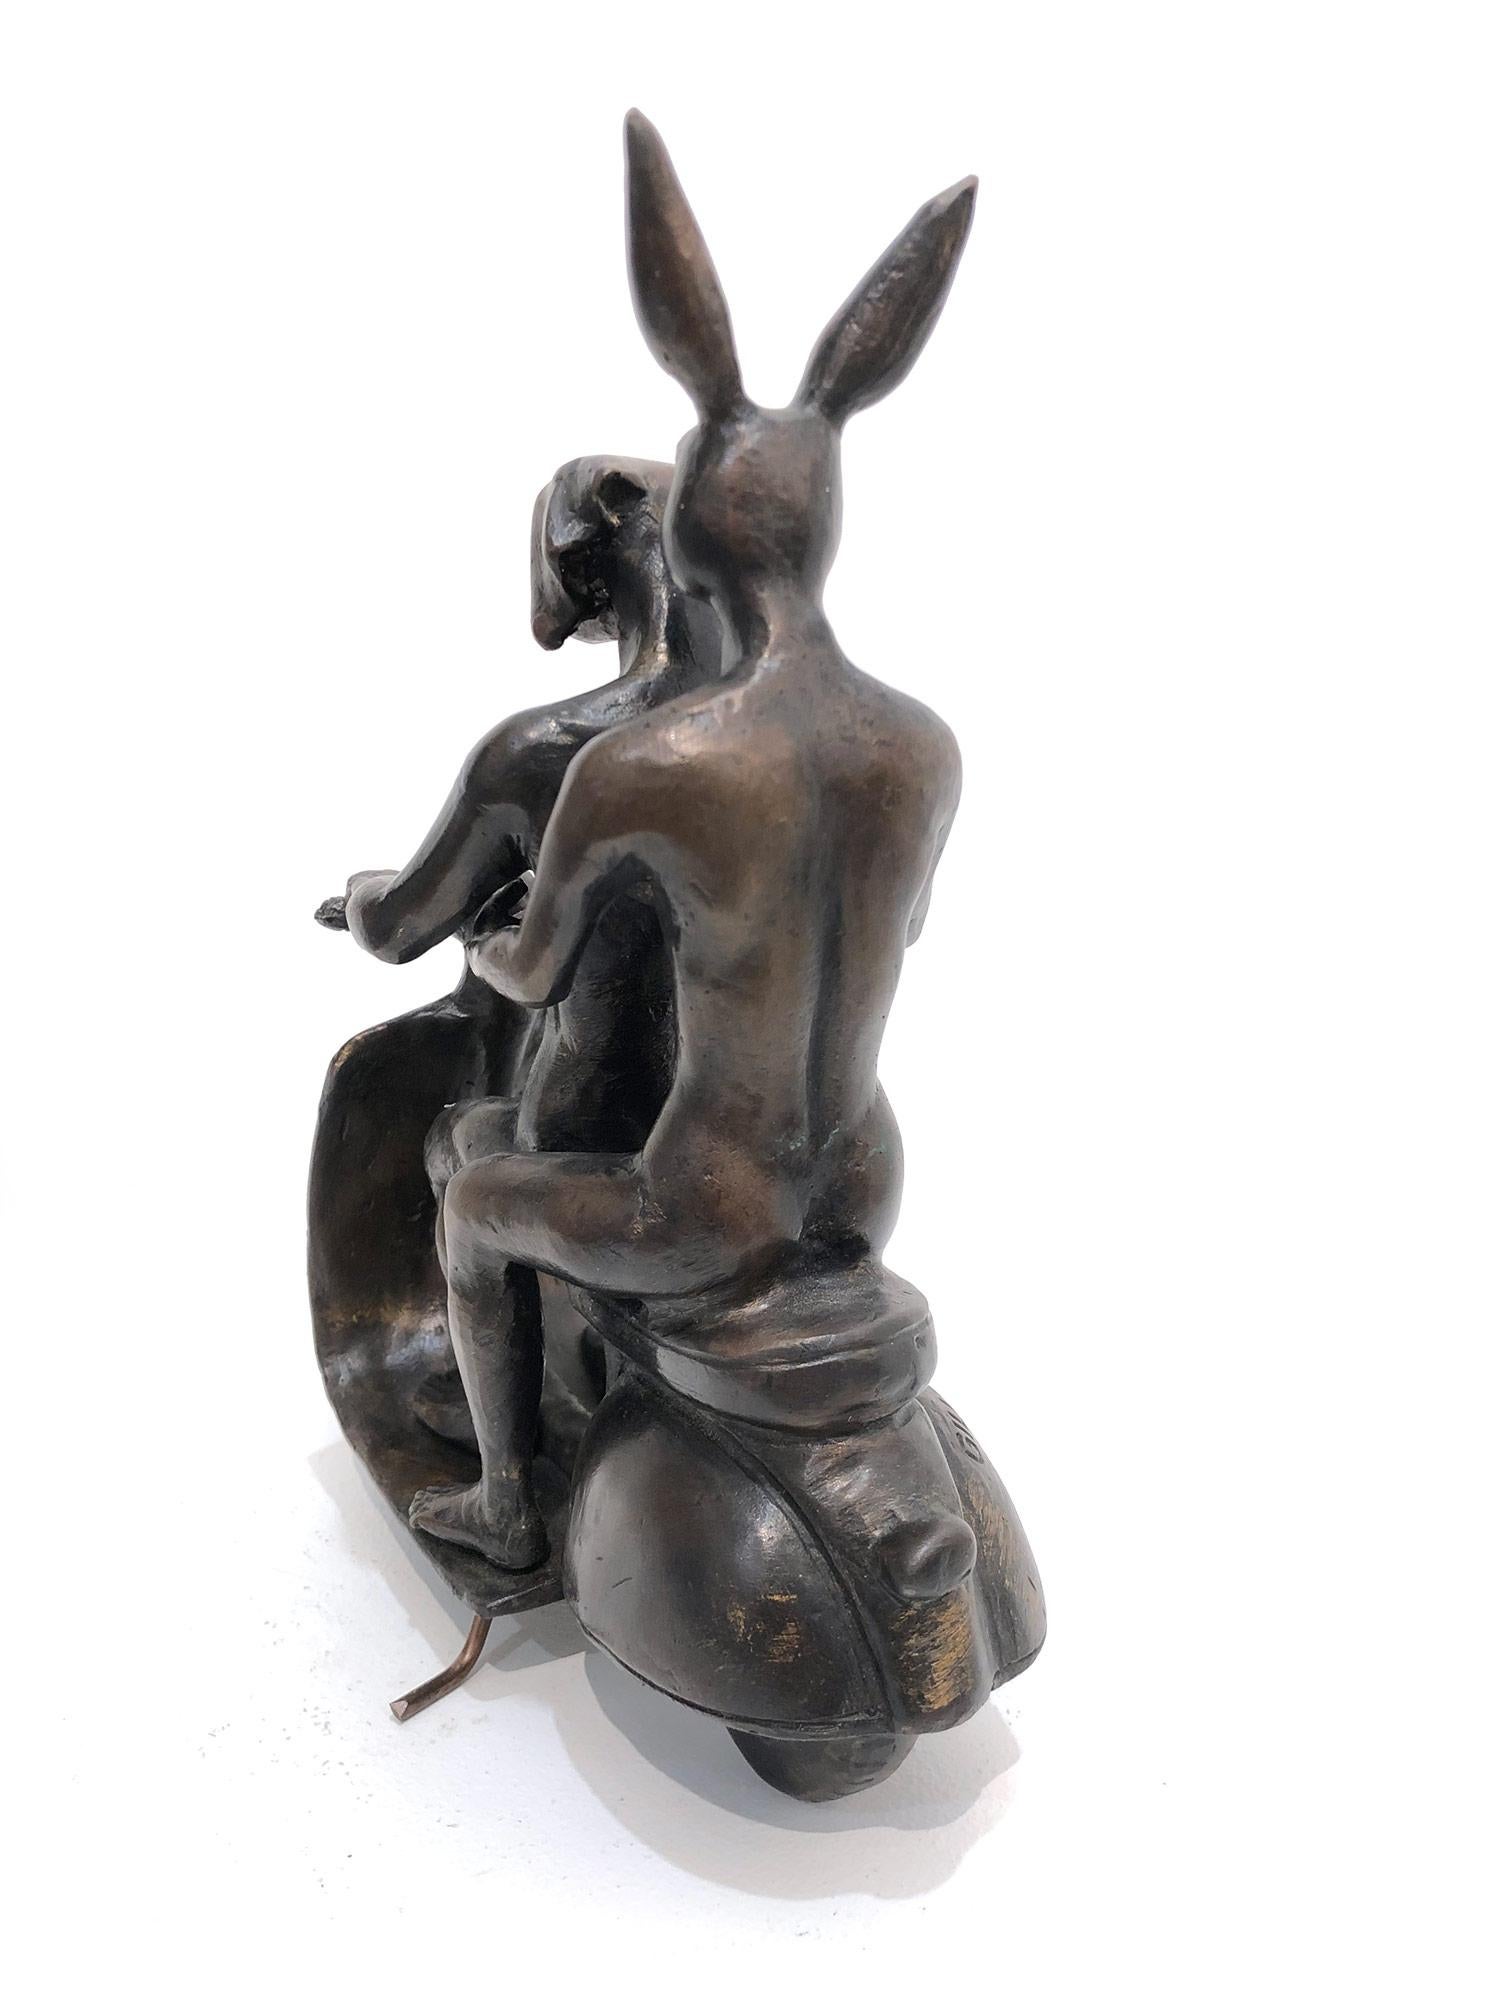 Ils étaient les authentiques cavaliers Vespa à Rome (bronze avec patine bronze foncé) - Or Abstract Sculpture par Gillie and Marc Schattner